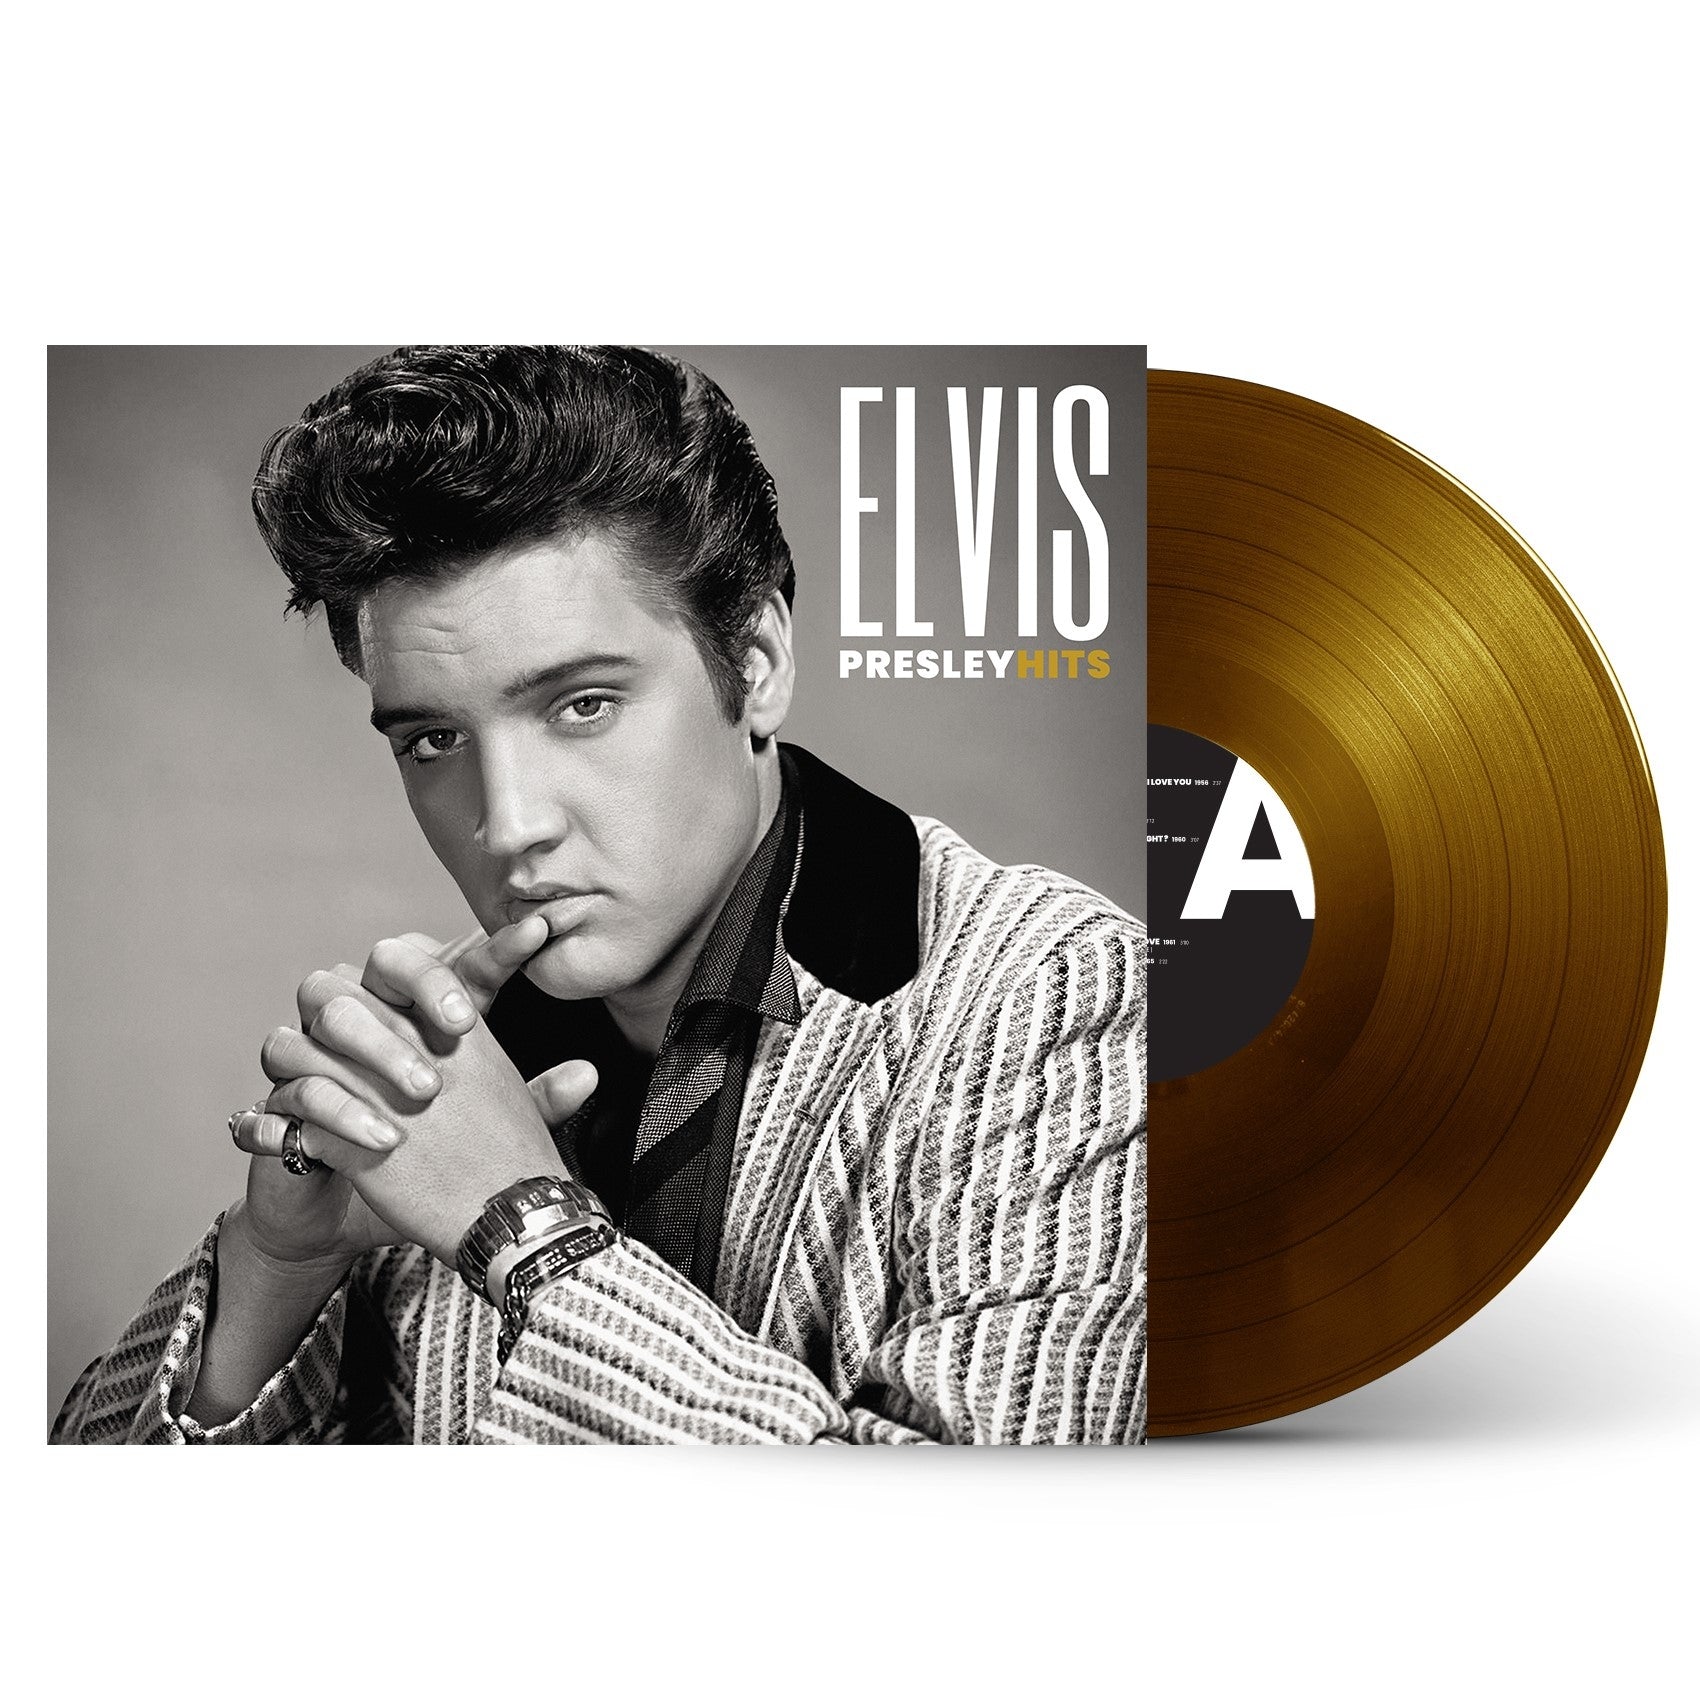 Klemme fordøje Stærk vind Elvis Presley / Hits - LP Vinyl – Propagande